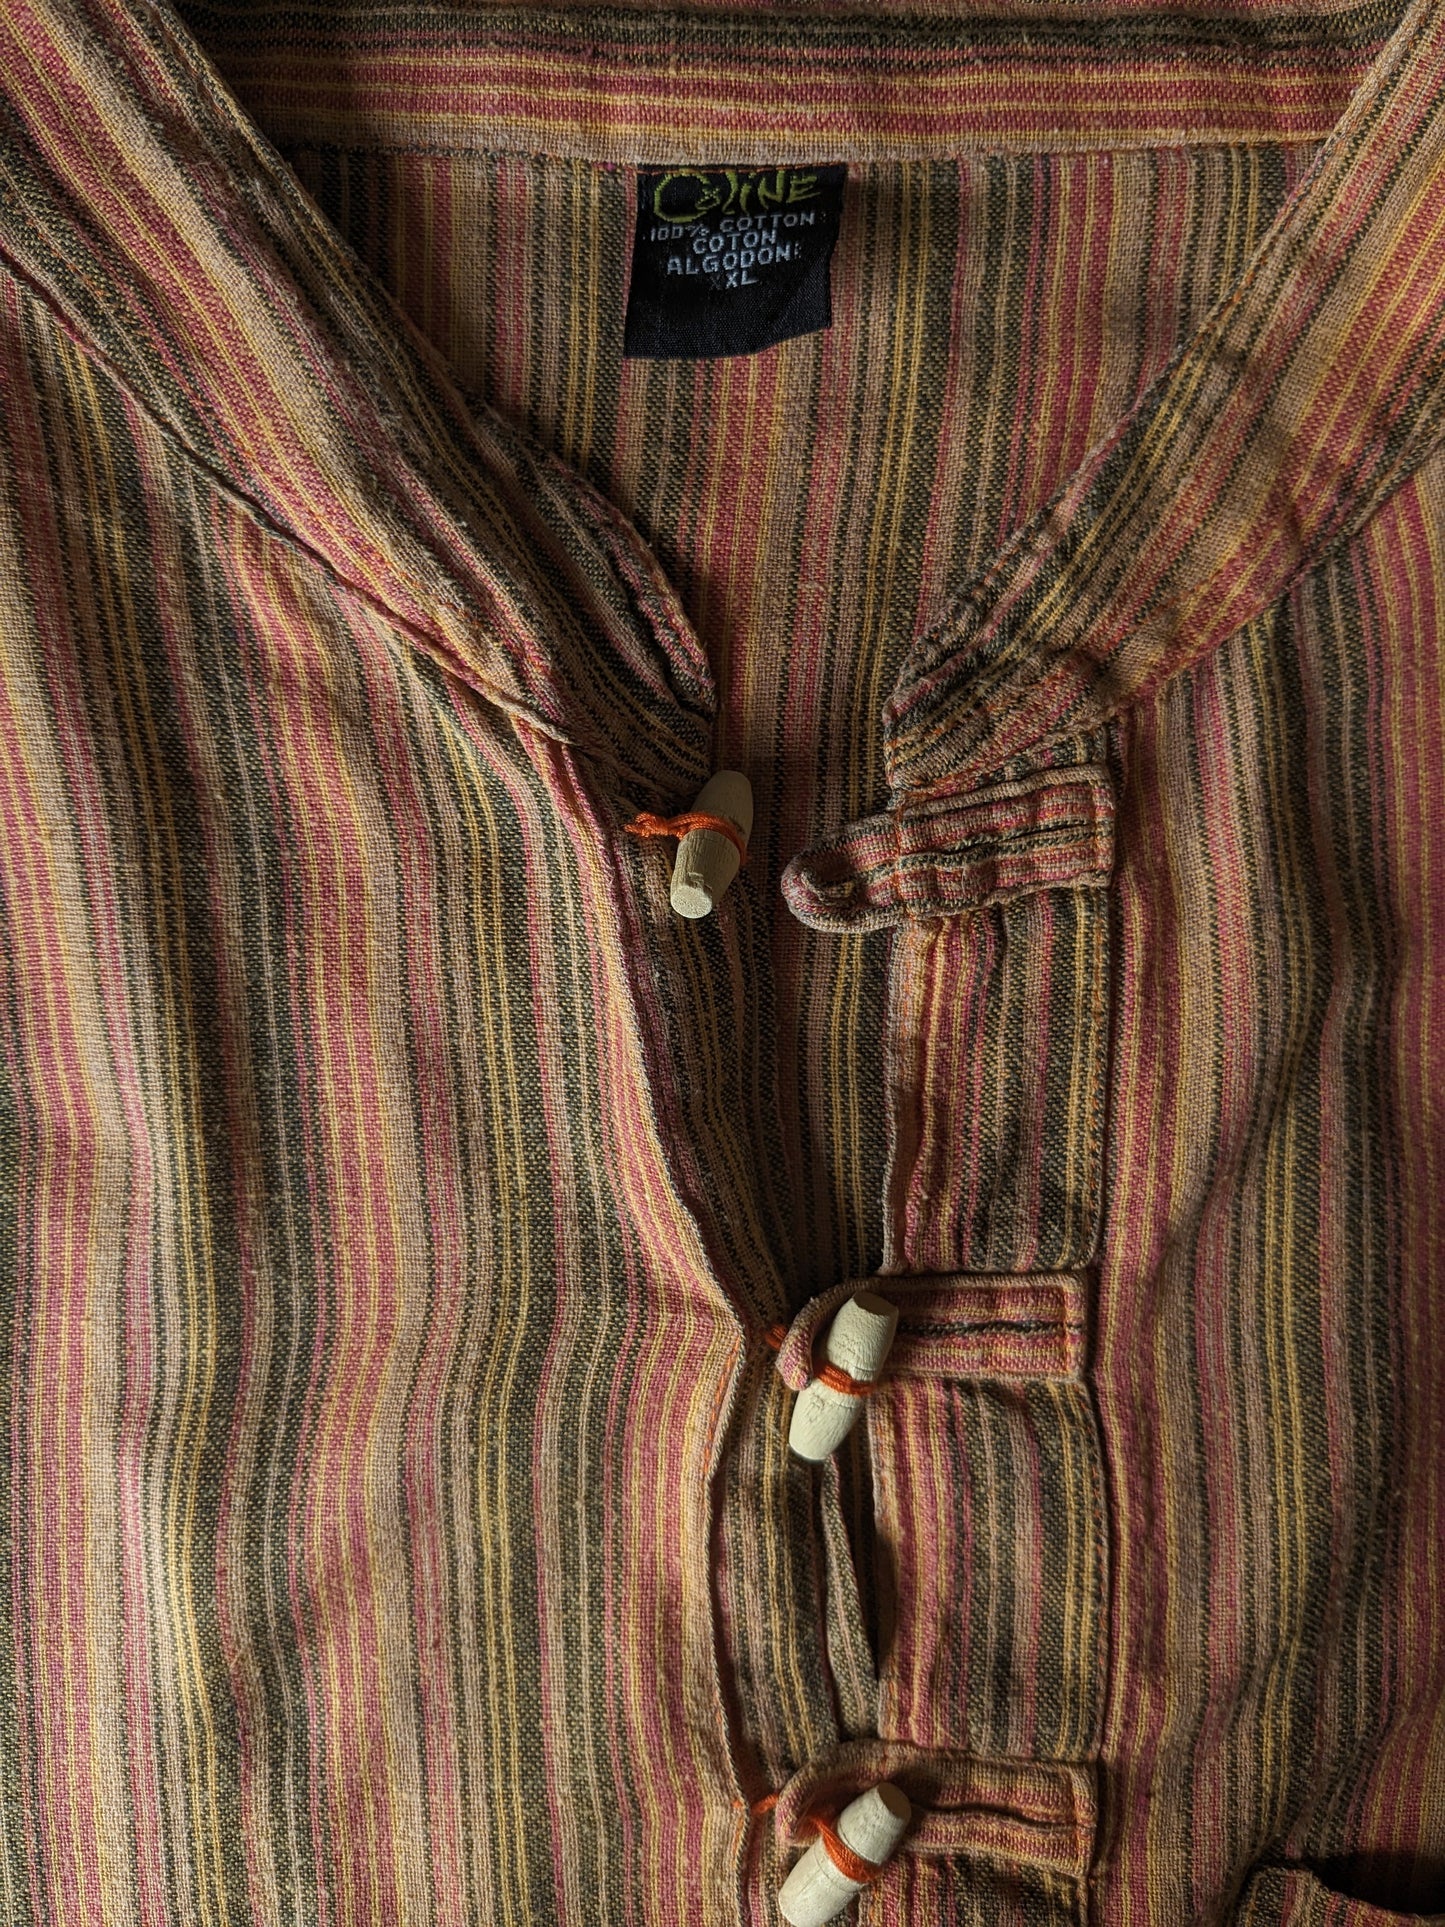 Vintage Coline -Shirt mit MAO / Bauer / Stehkragen. Orange rot gelb schwarz gestreift. Größe xl.